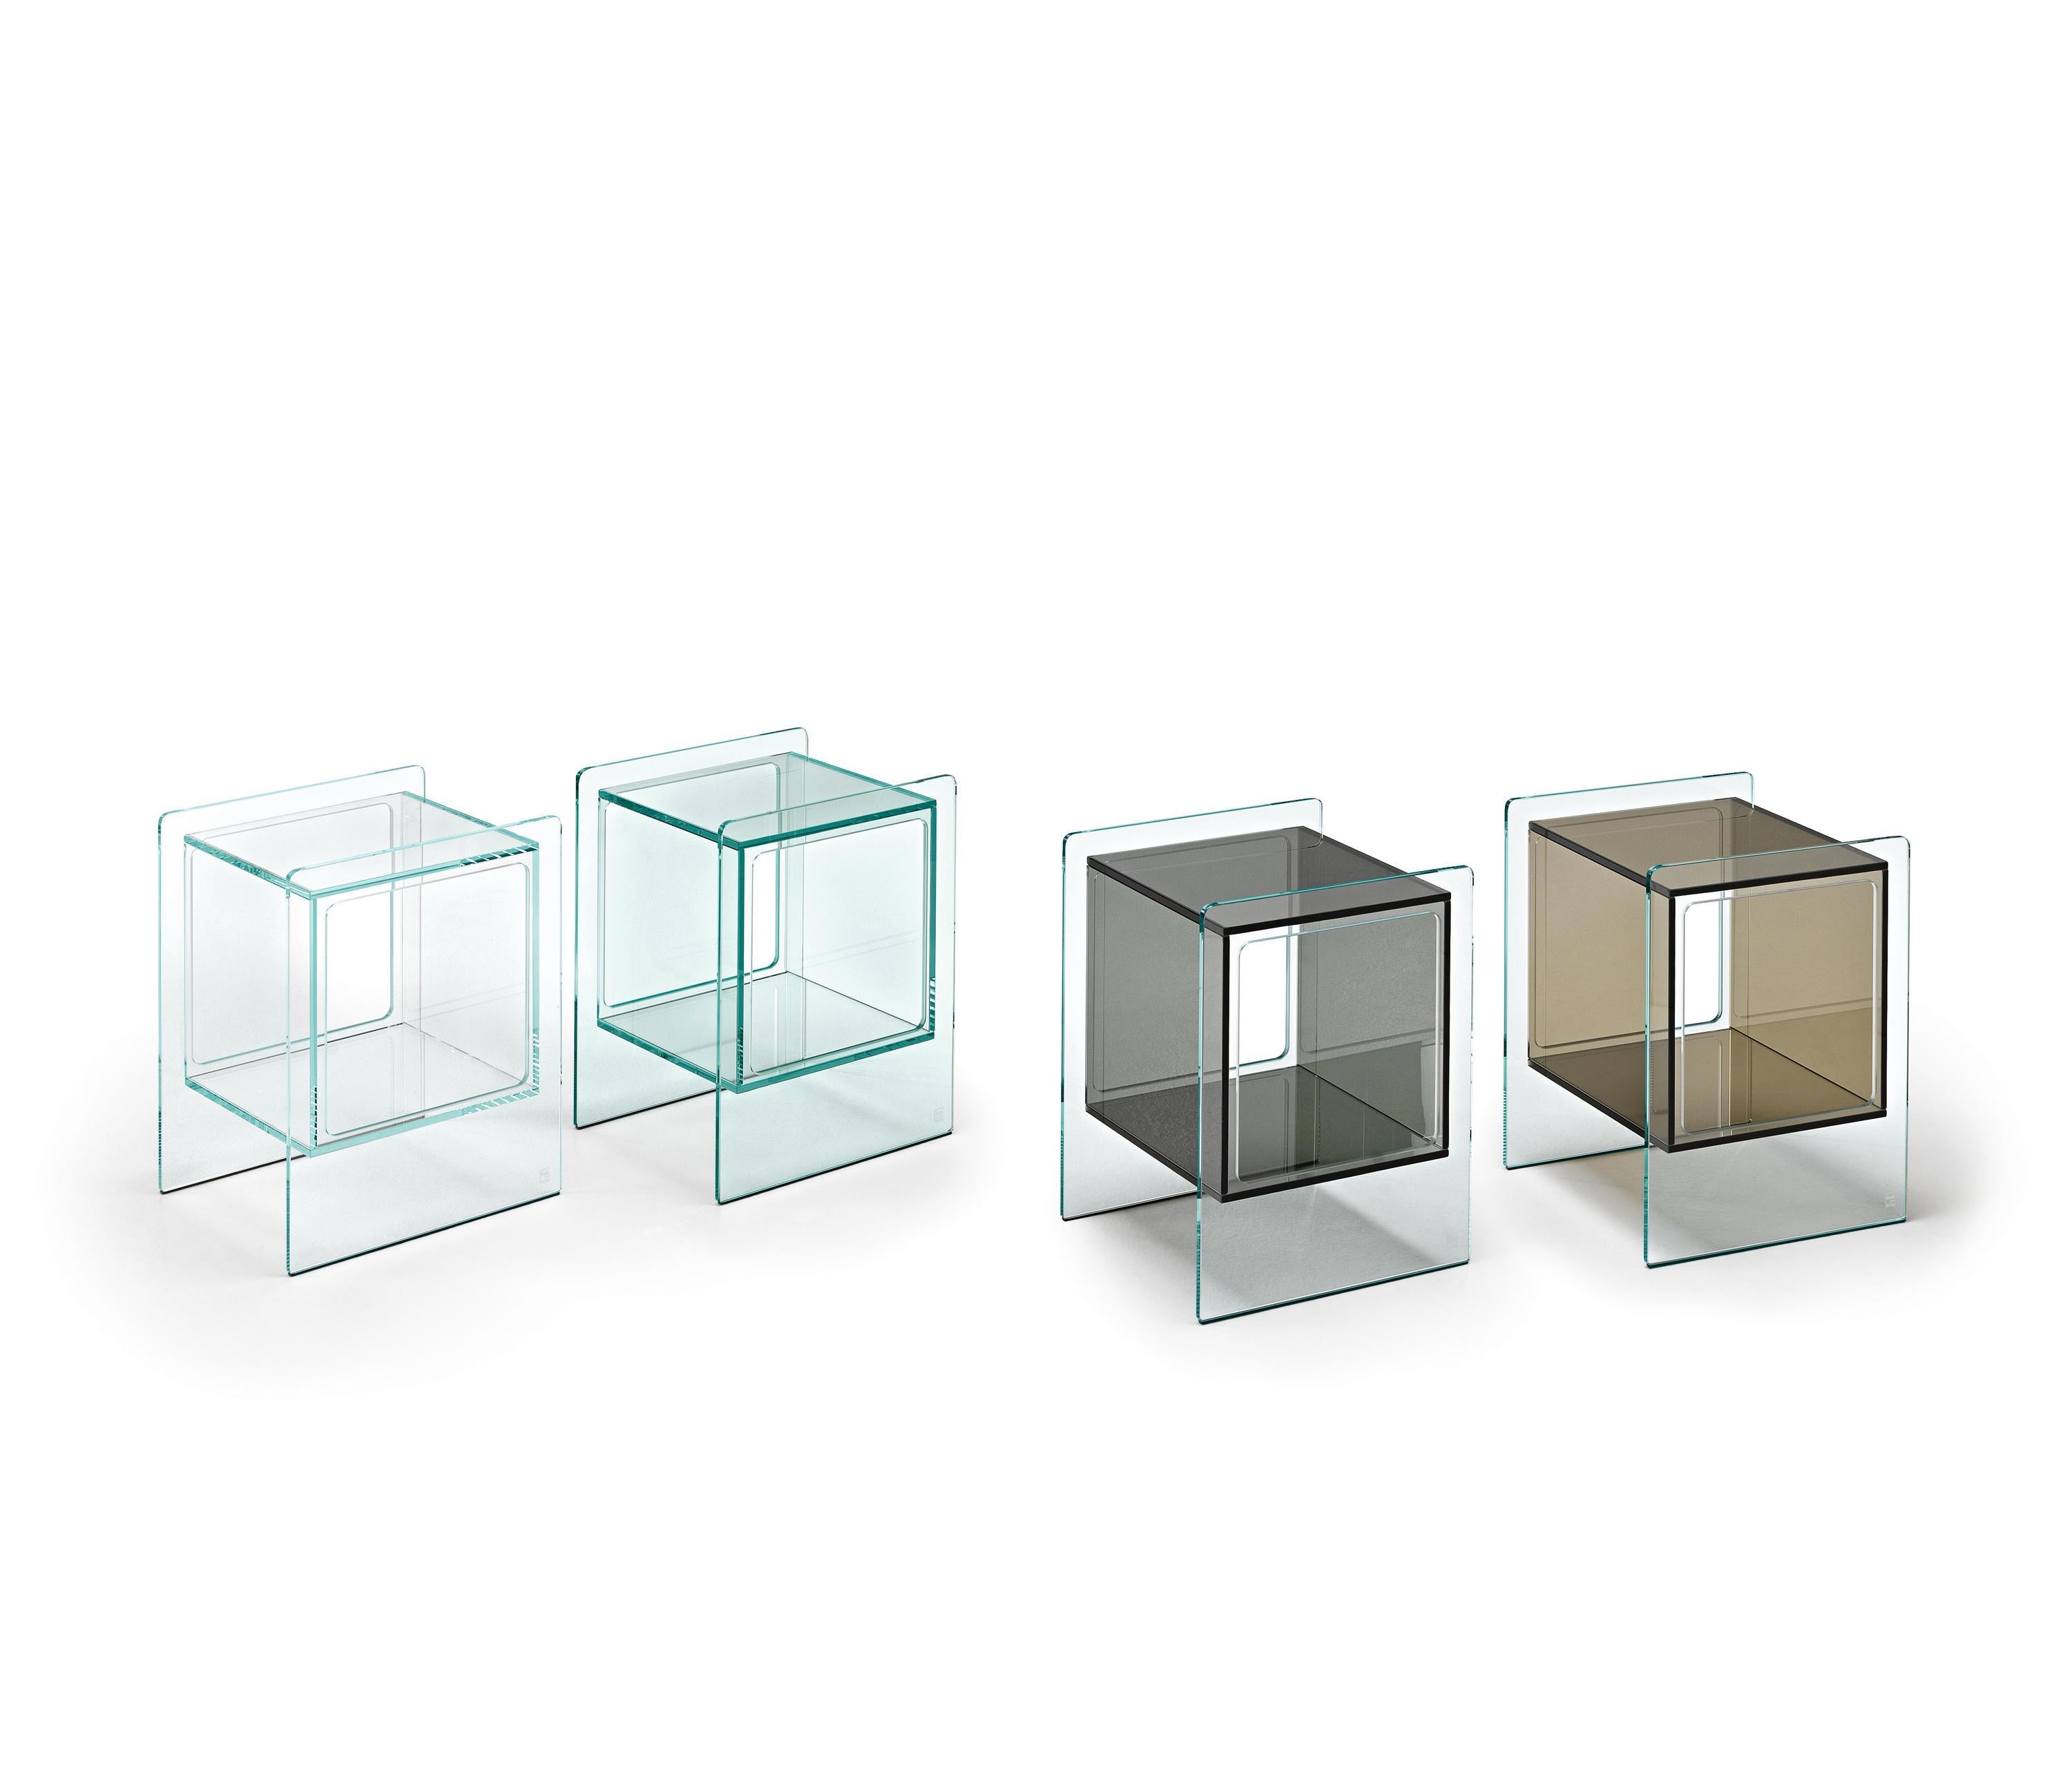 Table de chevet avec compartiment intérieur cubique en verre de 10 mm d'épaisseur. Disponible en plusieurs finitions. Structure en verre extralight, compartiment intérieur en verre blanc opalin.
 